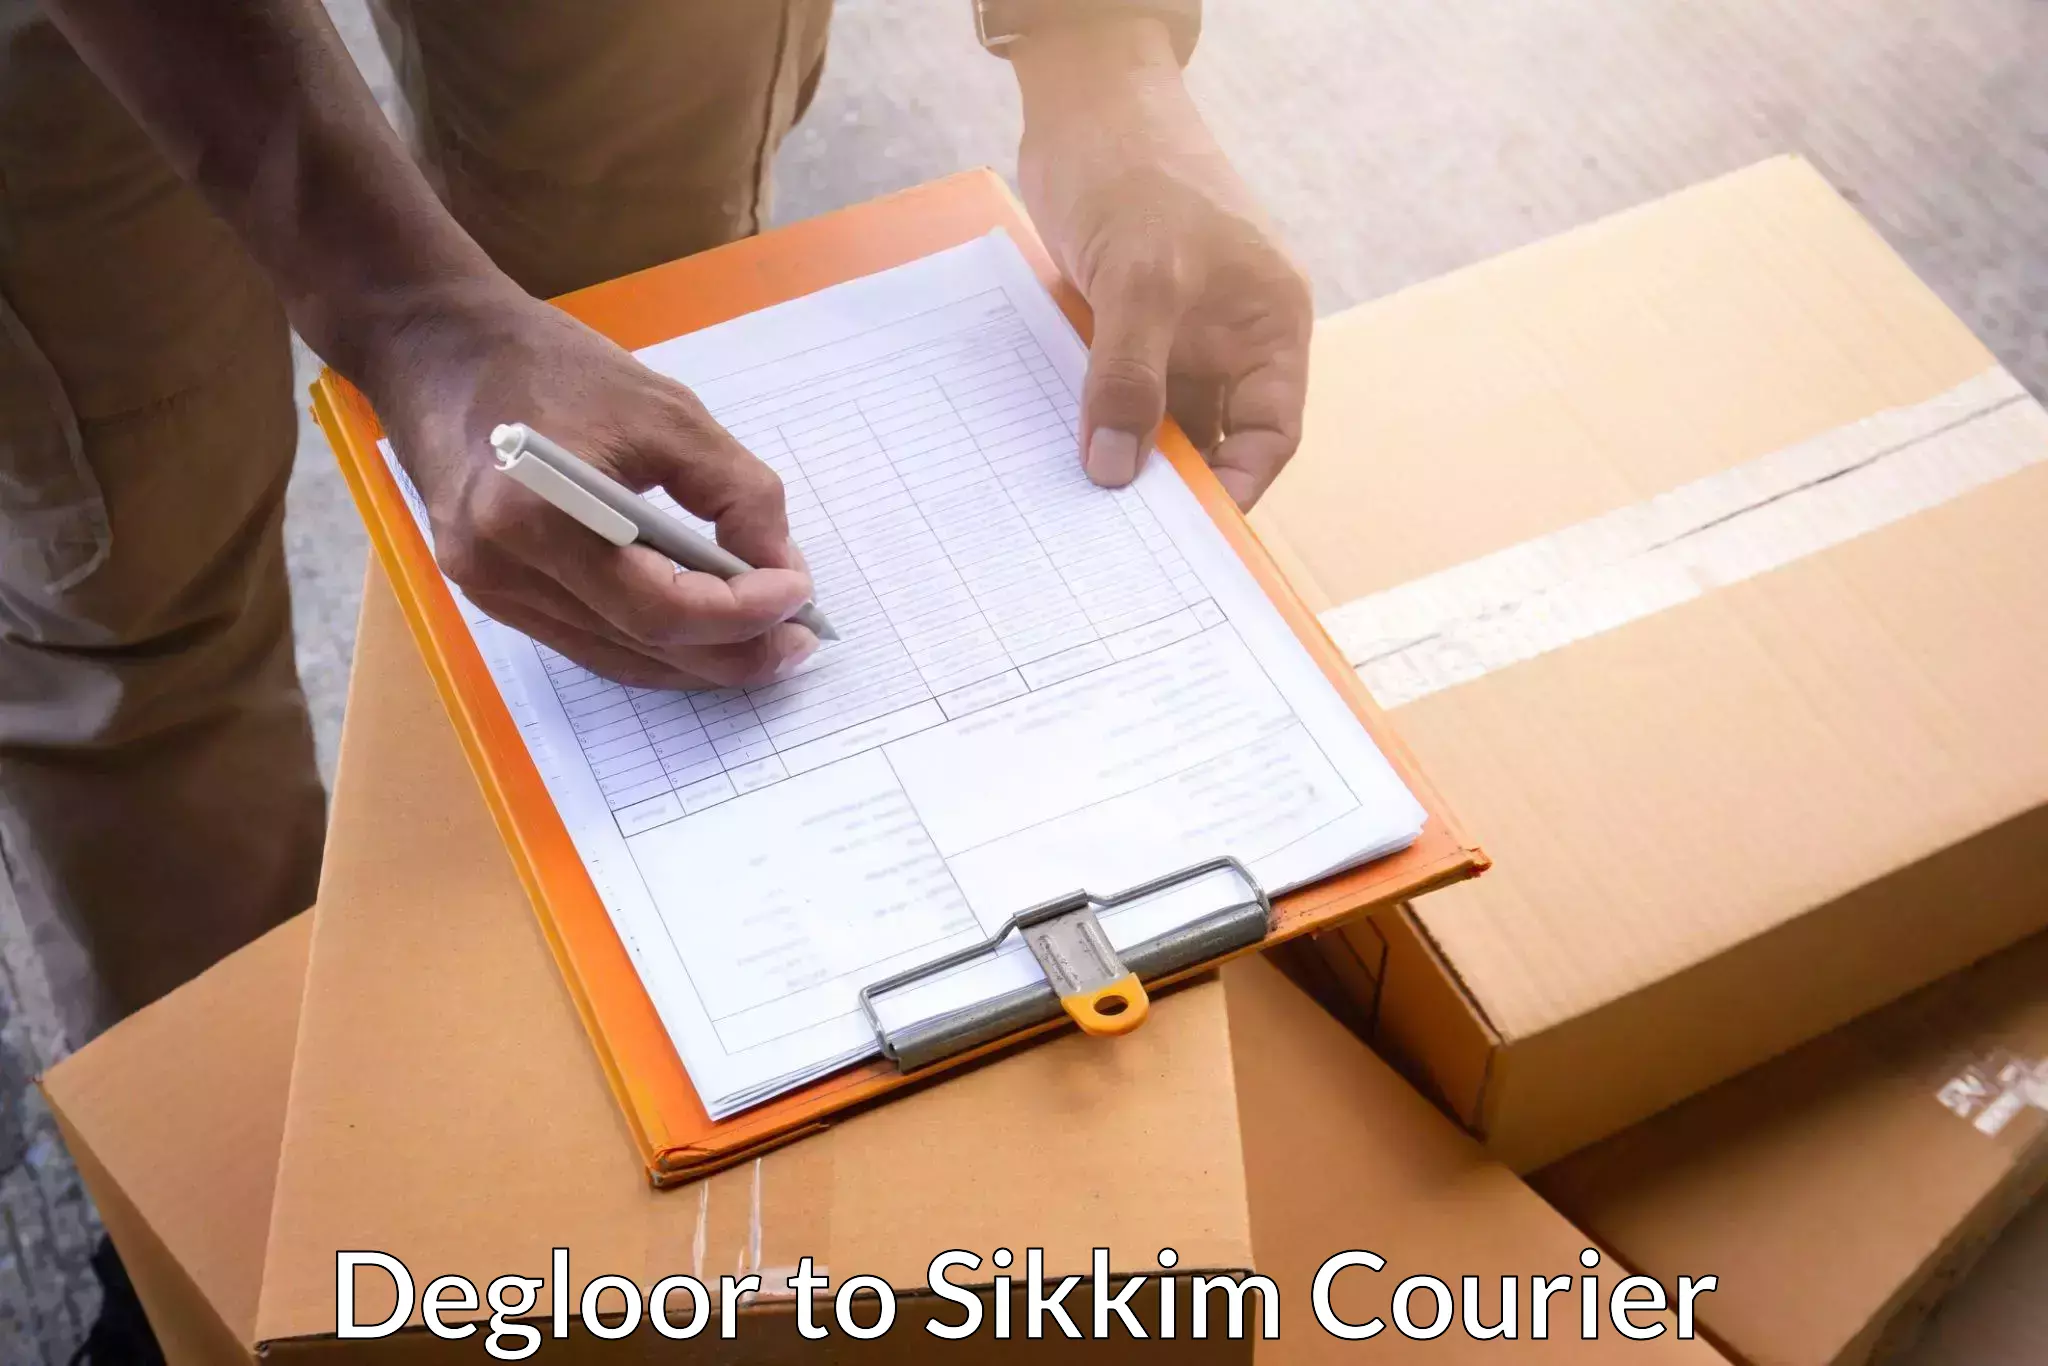 Quick parcel dispatch Degloor to East Sikkim